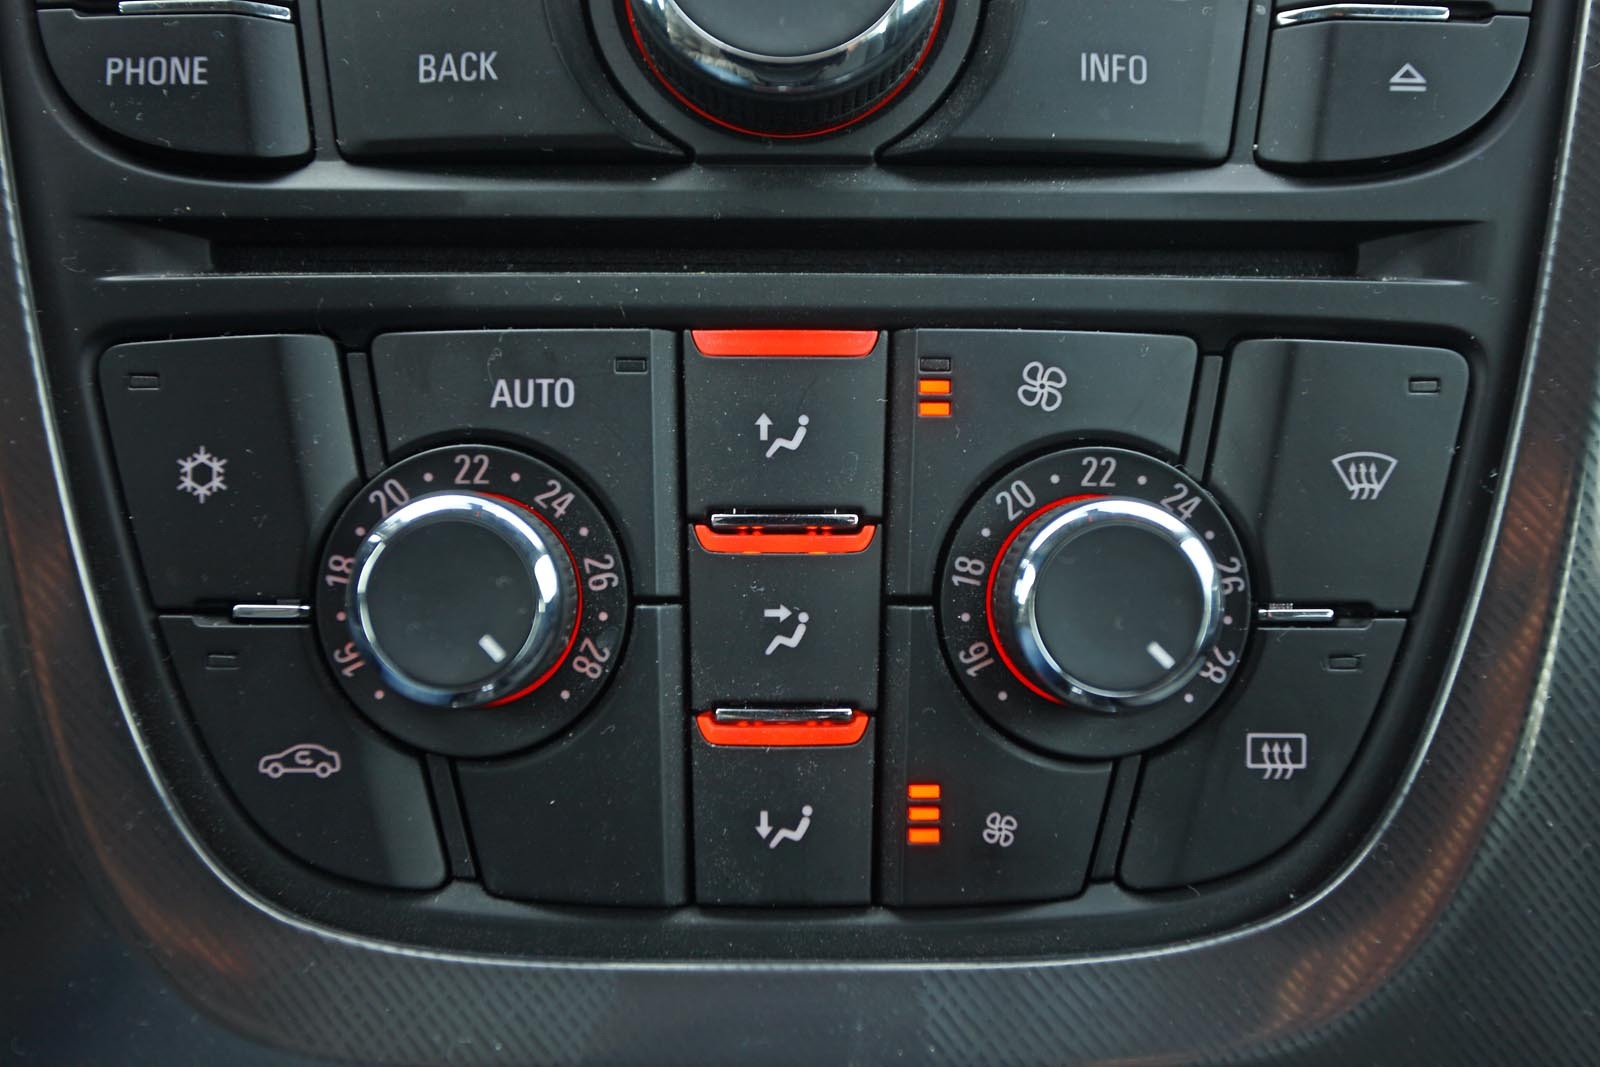 Opel Astra - solutie interesanta pentru climatizarea automata, dar necesita acomodare